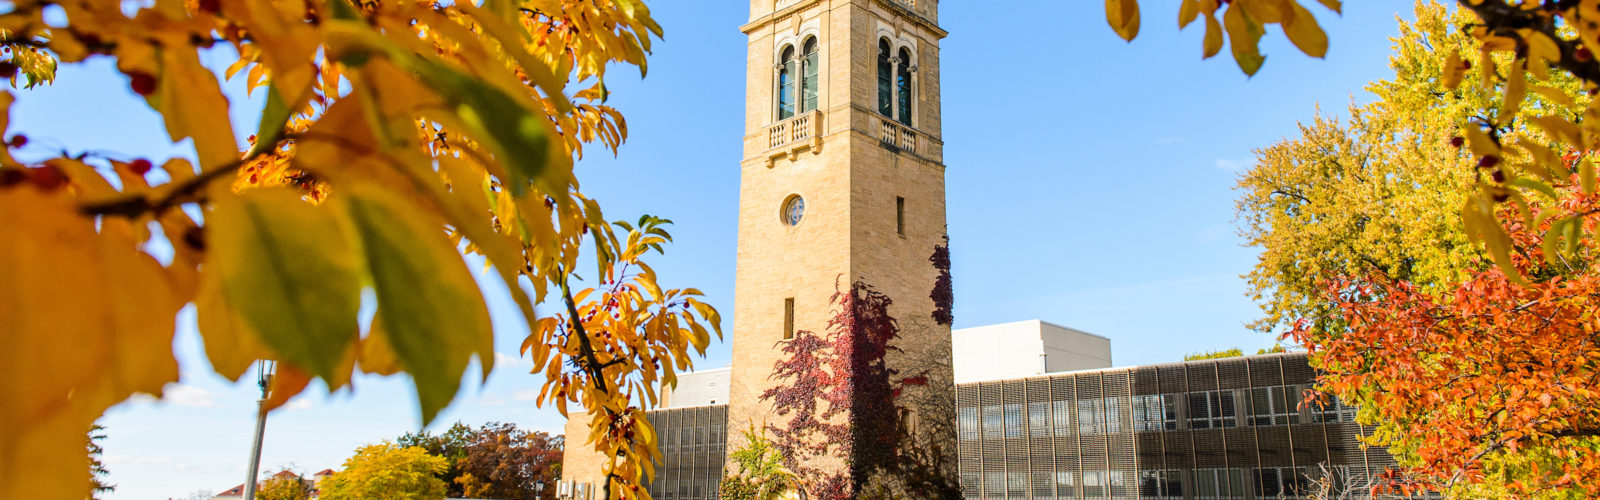 carillon tower